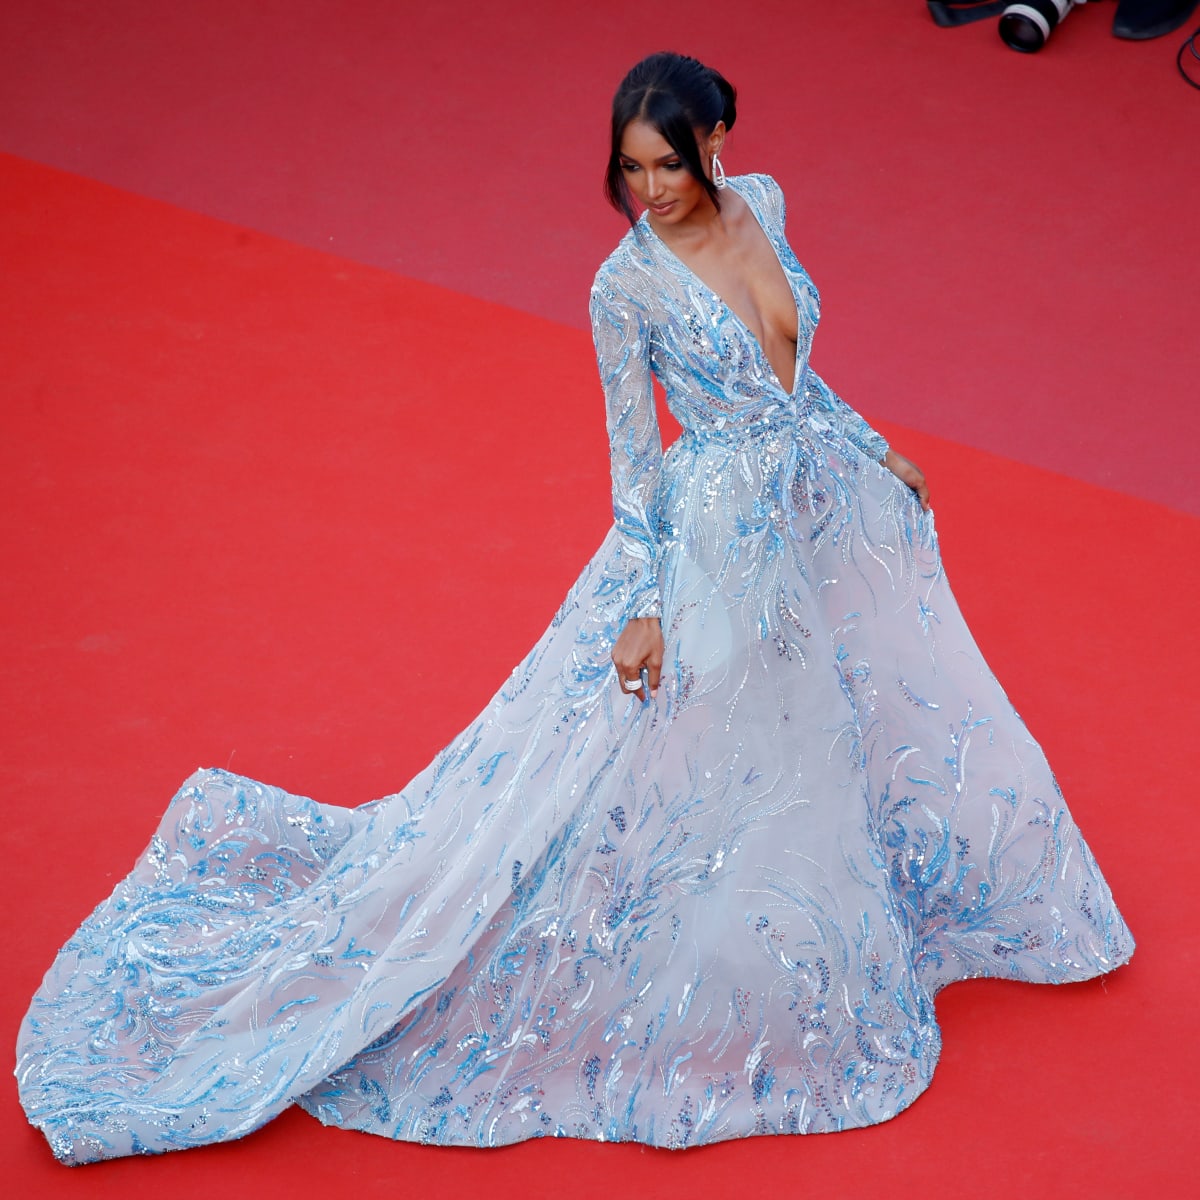 Selena Gomez Chanel Suit Cannes 2019